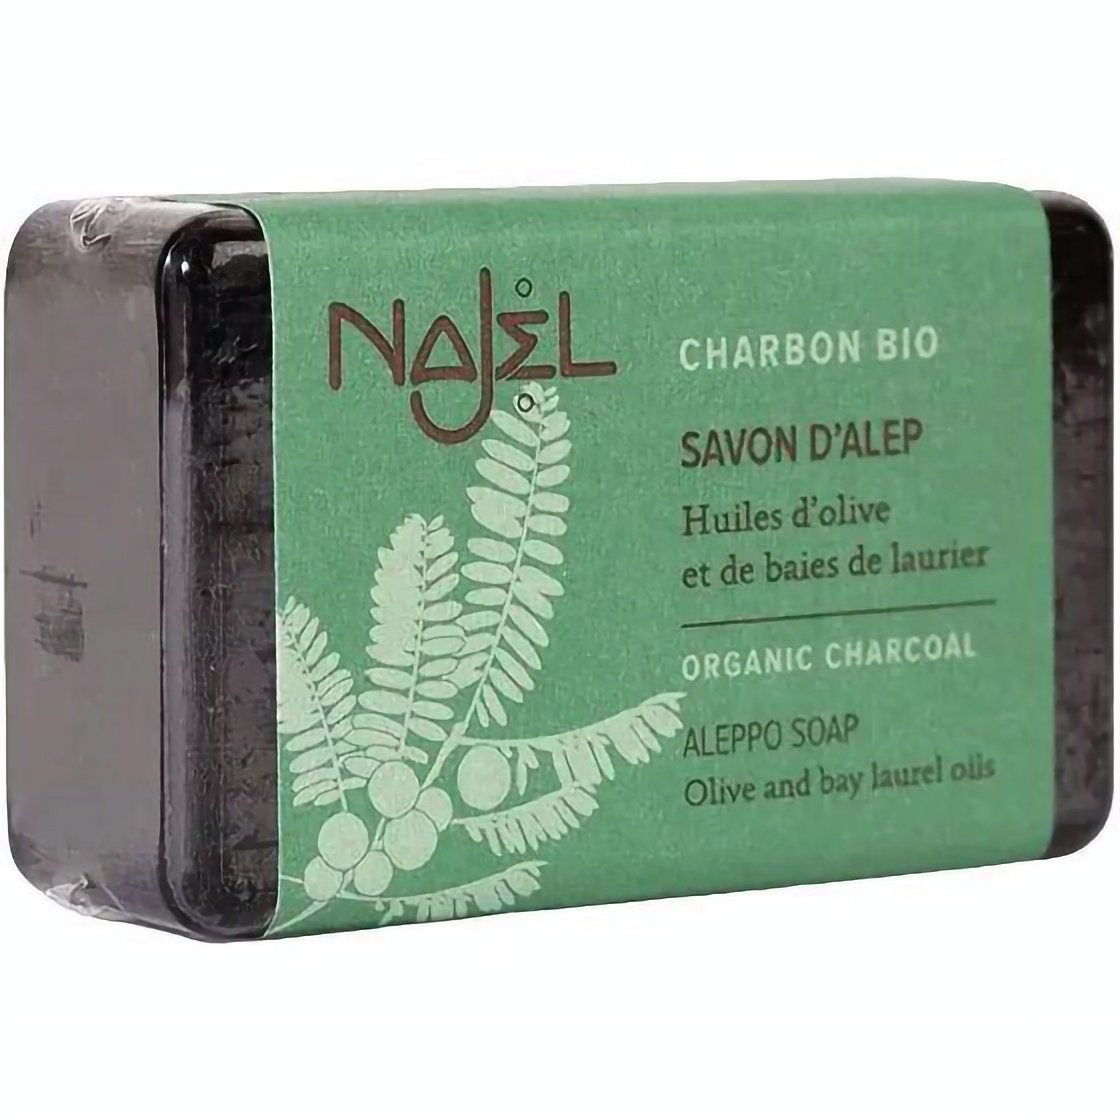 Алеппське мило Najel Aleppo Soap Organic Charcoal з органічним рослинним вугіллям 100 г - фото 1